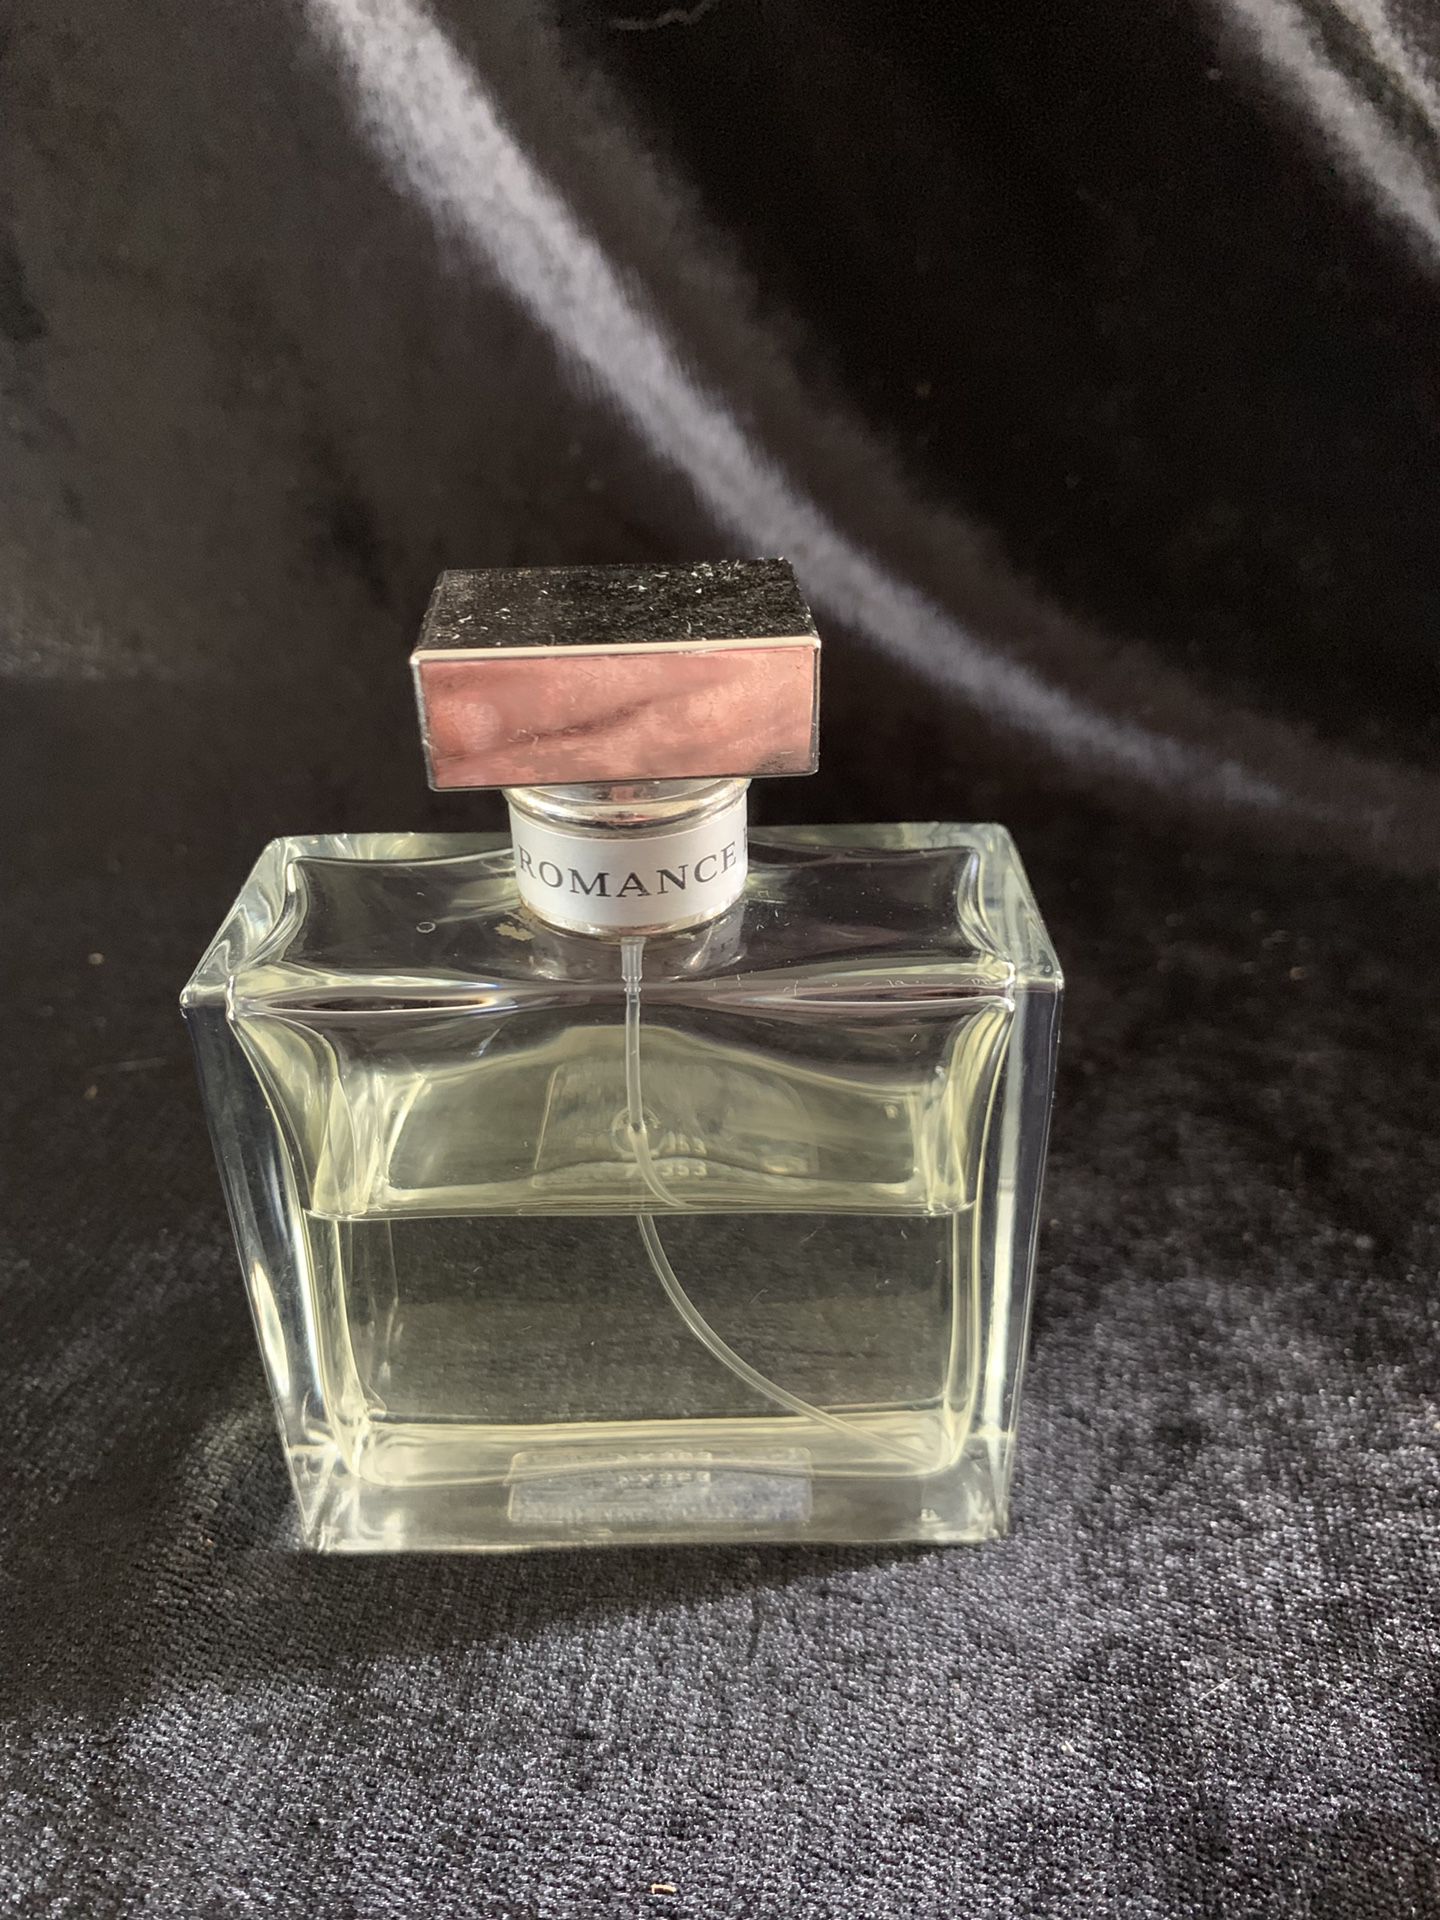 Raulph lauren romance perfume 50% full 3.40z